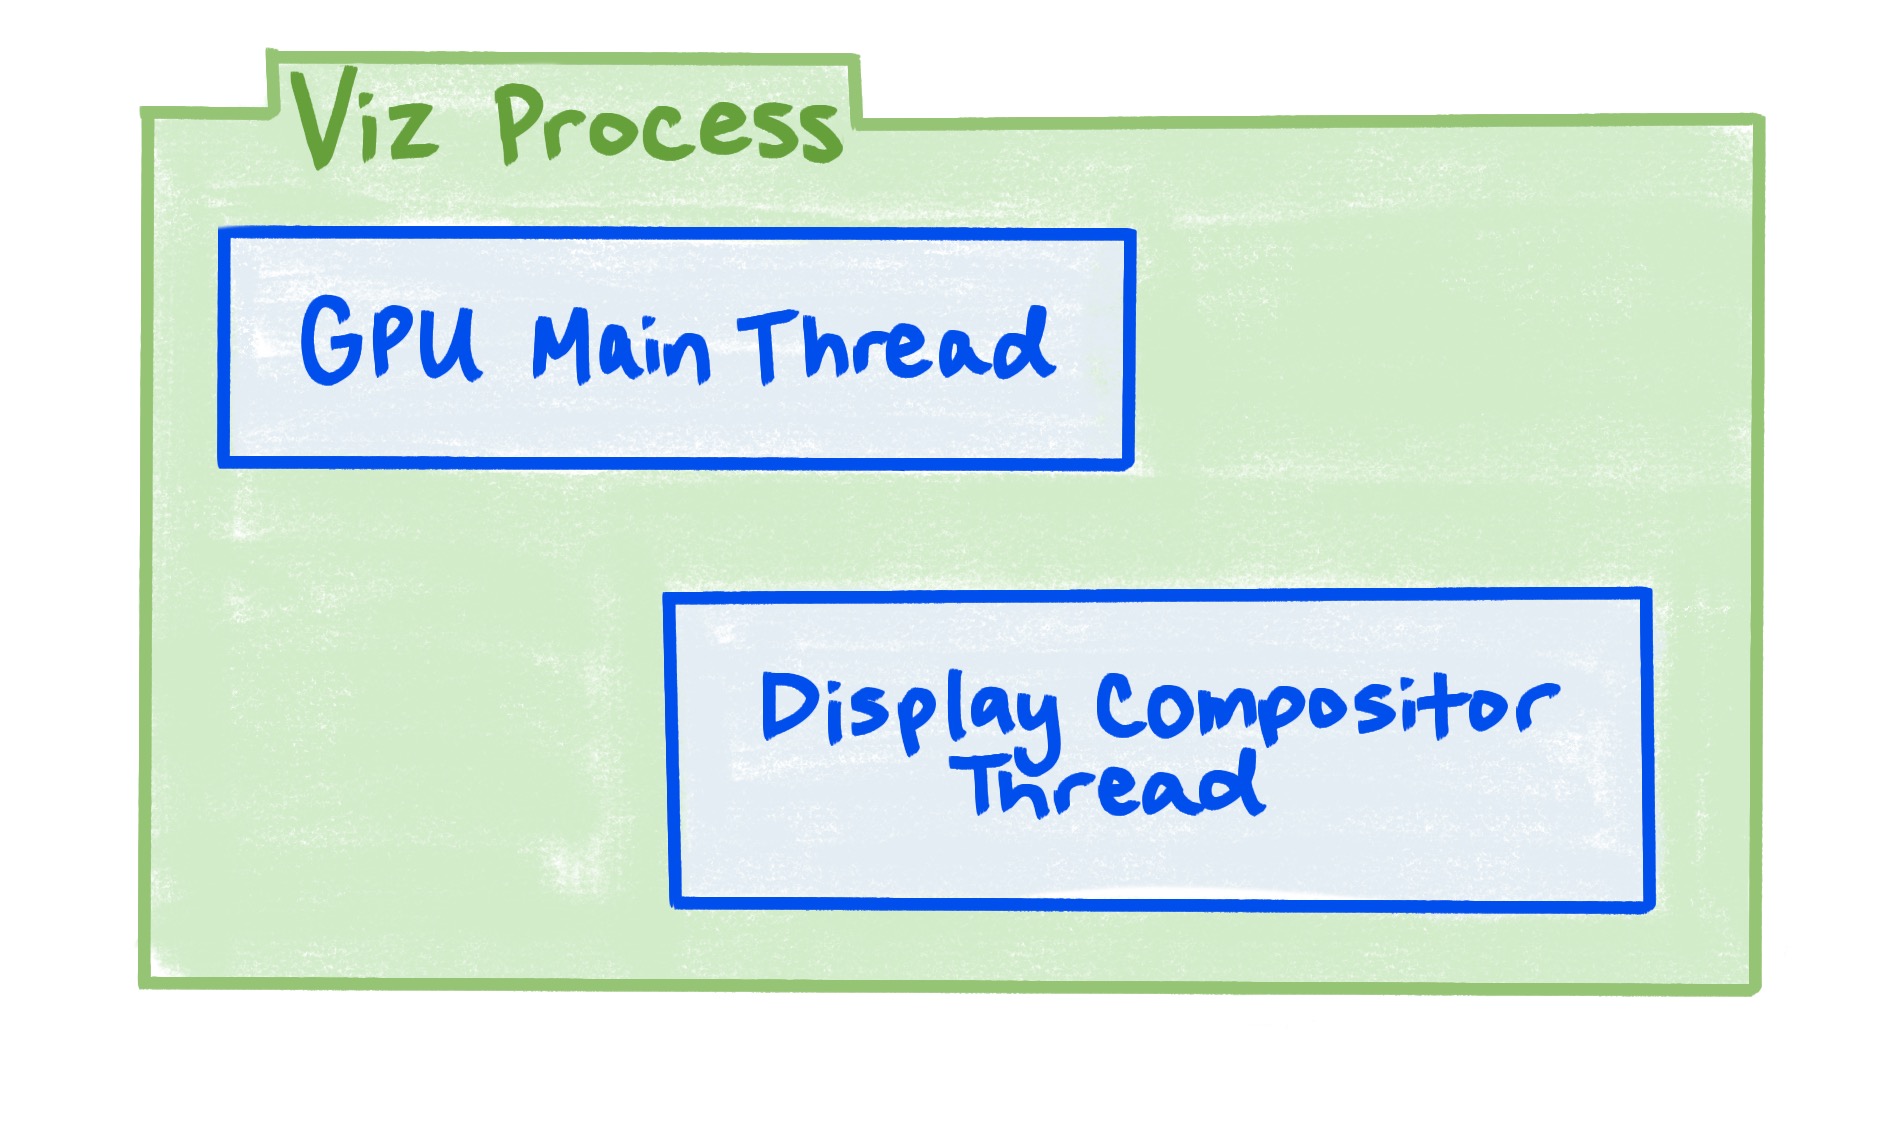 Viz işlemi, GPU ana iş parçacığını ve görüntü birleştirici iş parçacığını içerir.